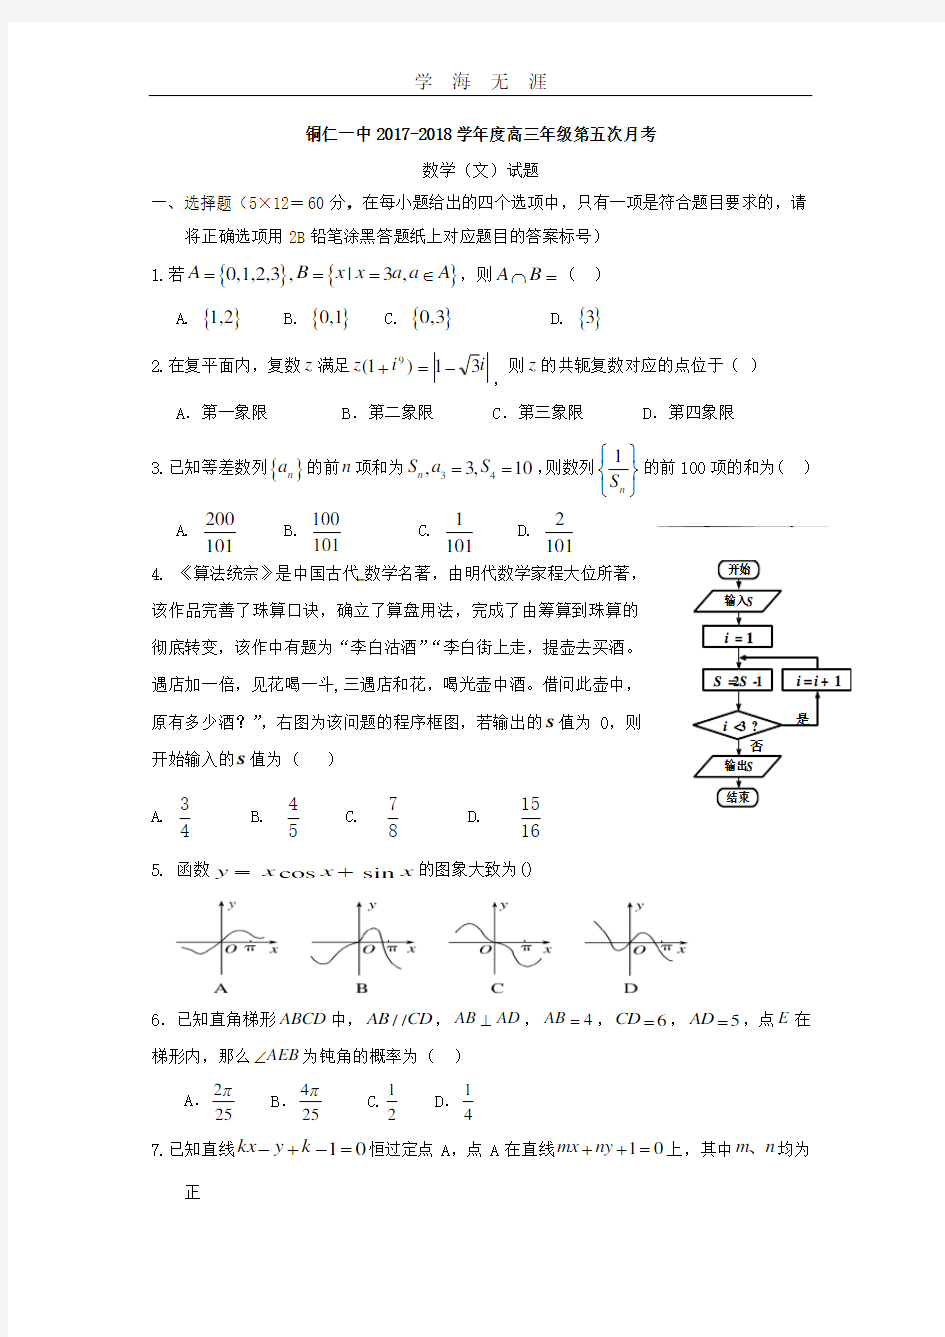 高考小题狂练.pdf